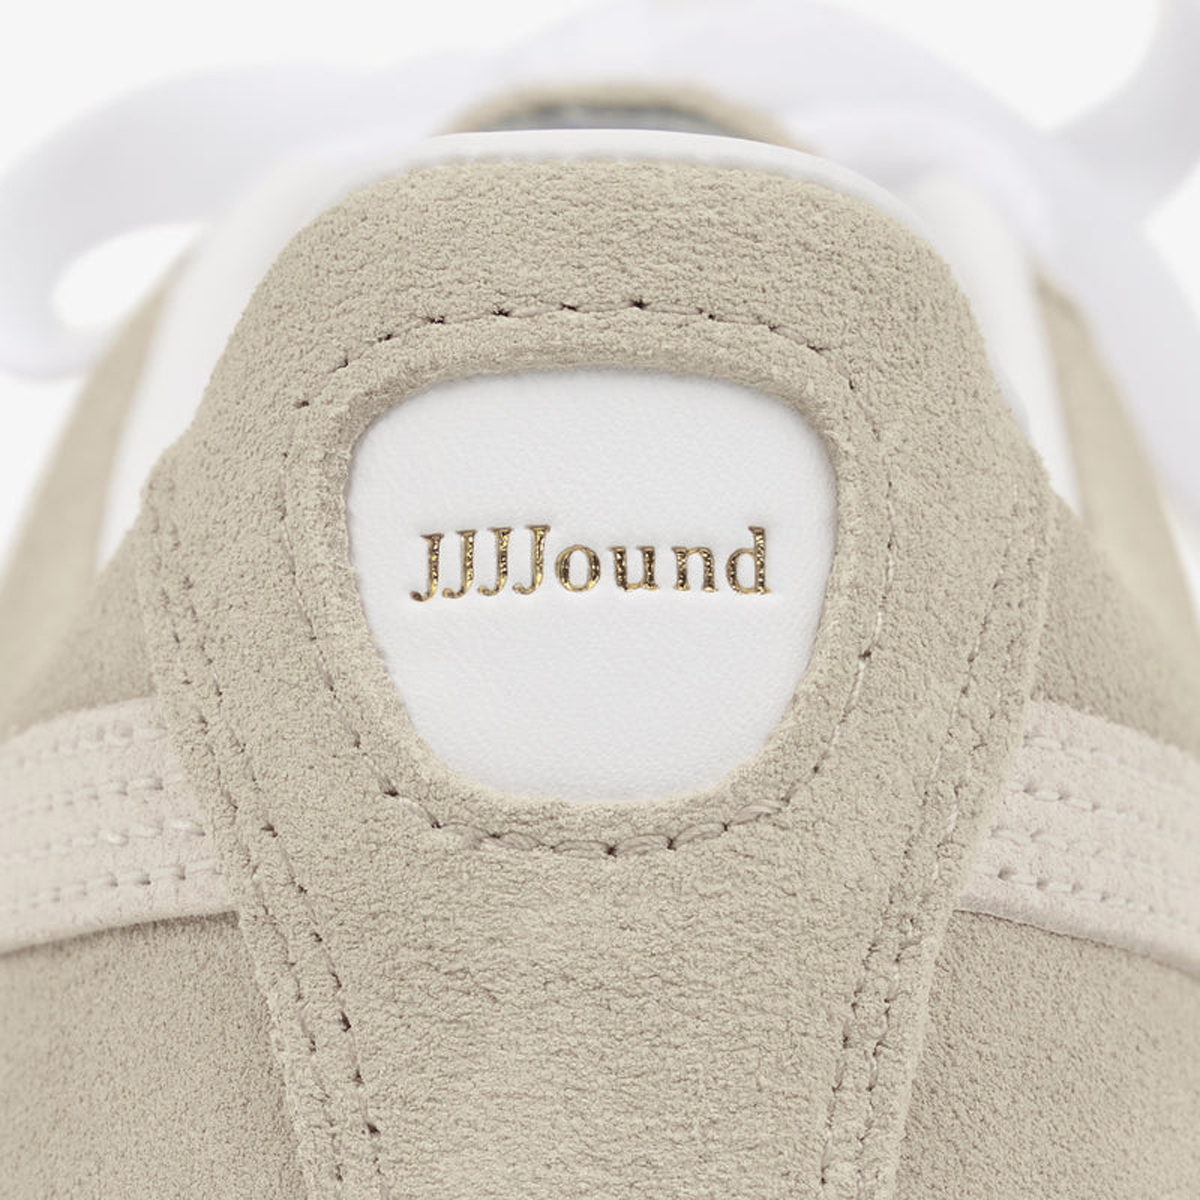 jjjjound-puma-suede-shoe-release-date-price-5